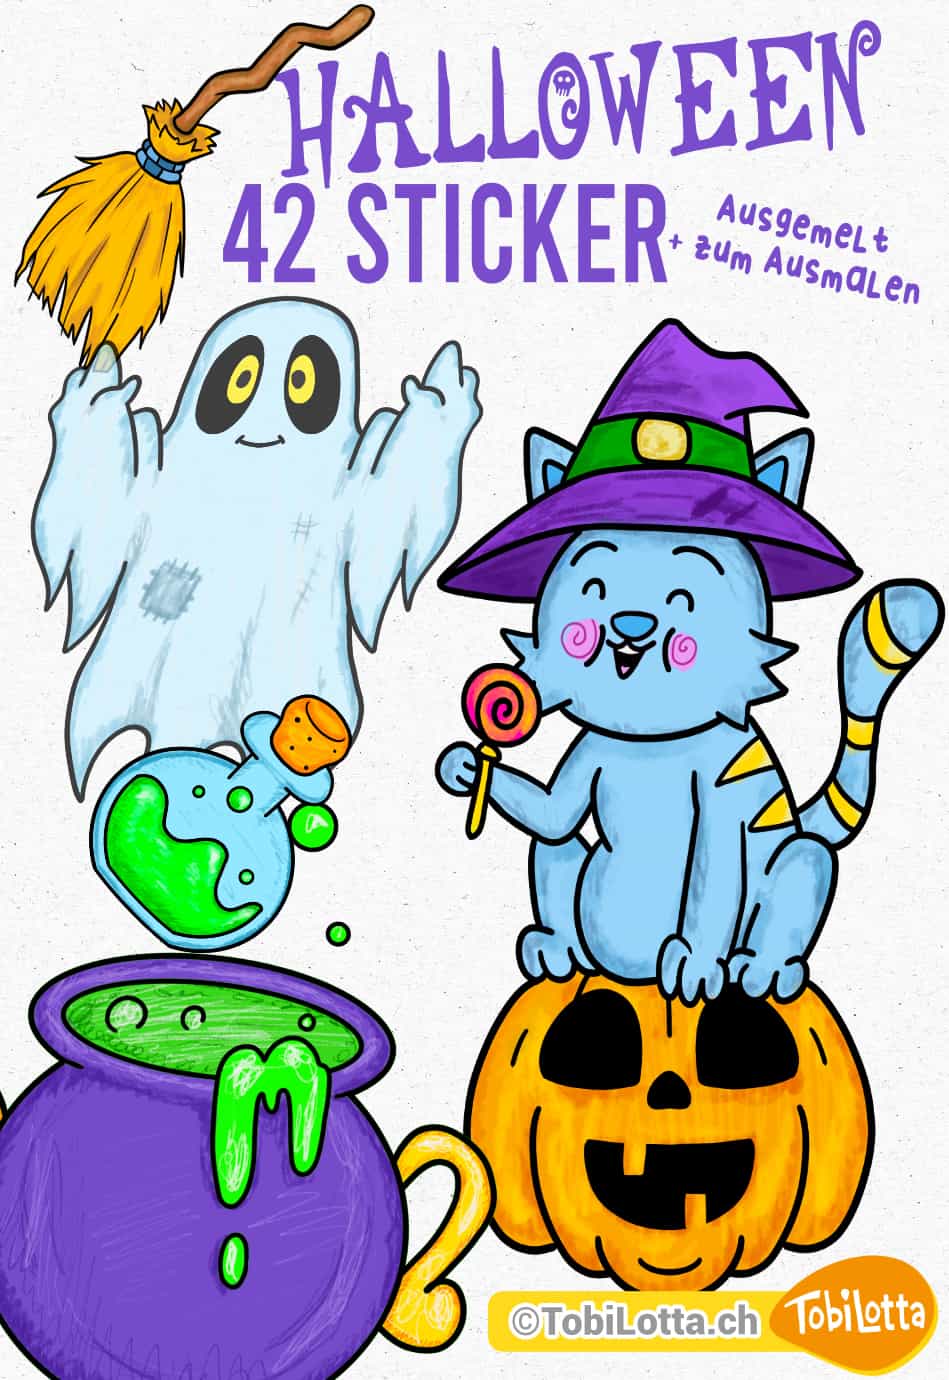 Halloween sticker ausmalvorlage kinder vorlagen Aufkleber Badges zum Ausdrucken Ausmalvorlage Halloween Katze, Kürbis, Frankenstein, Süssigkeiten, Hexenbesen, Hexenhut, Hexenkugel 3